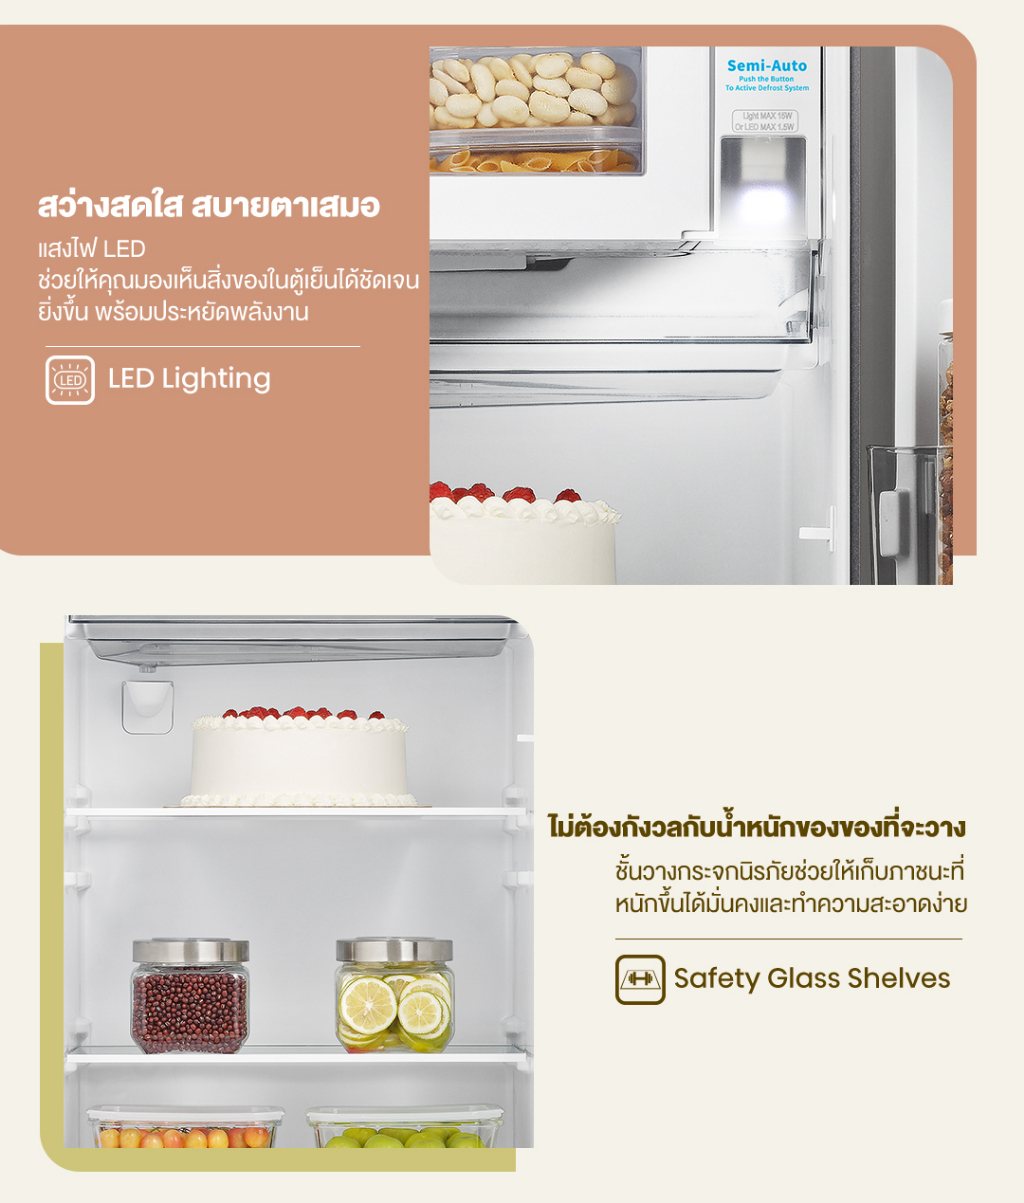 รูปภาพรายละเอียดของ Hisense ตู้เย็น 1 ประตู 6.5Q/ 184 ลิตร รุ่น RR229D4AD1 Black Color